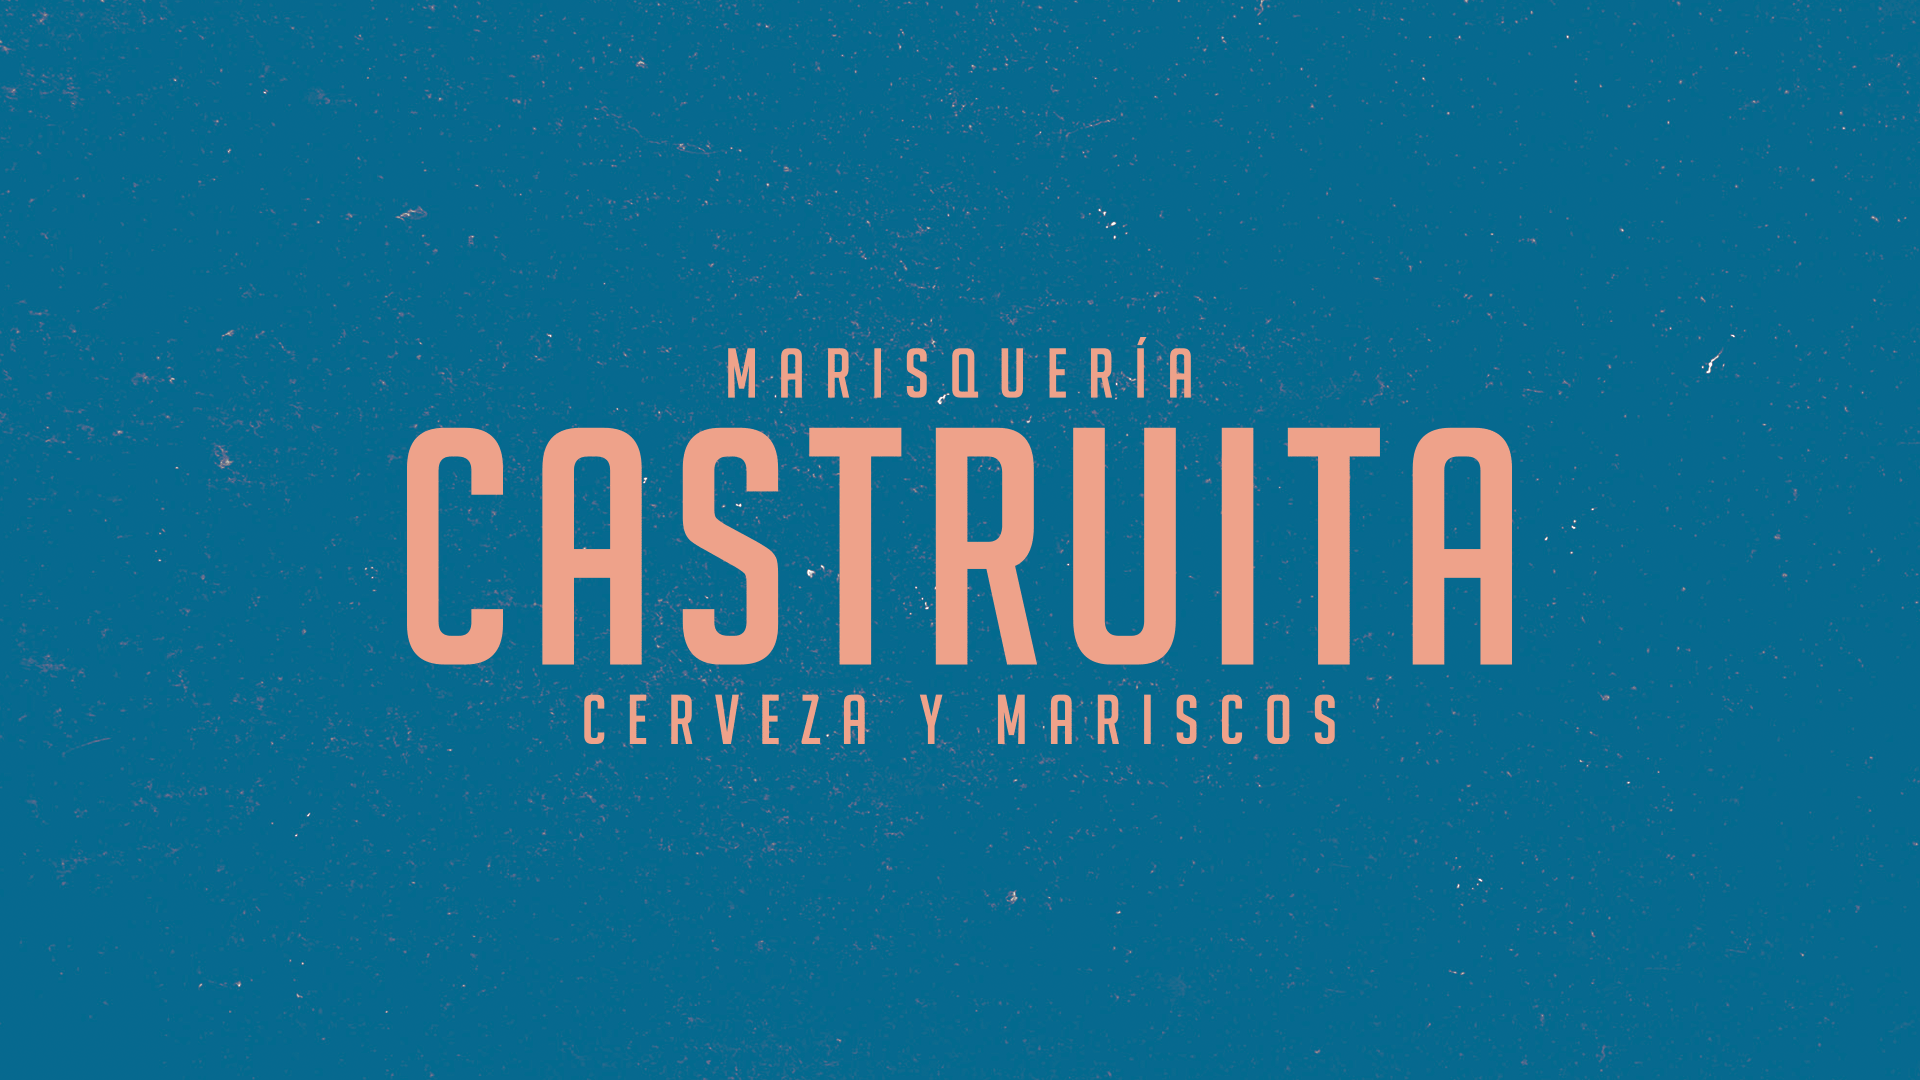 marisqueria-castruita-branding-kiwiids-03